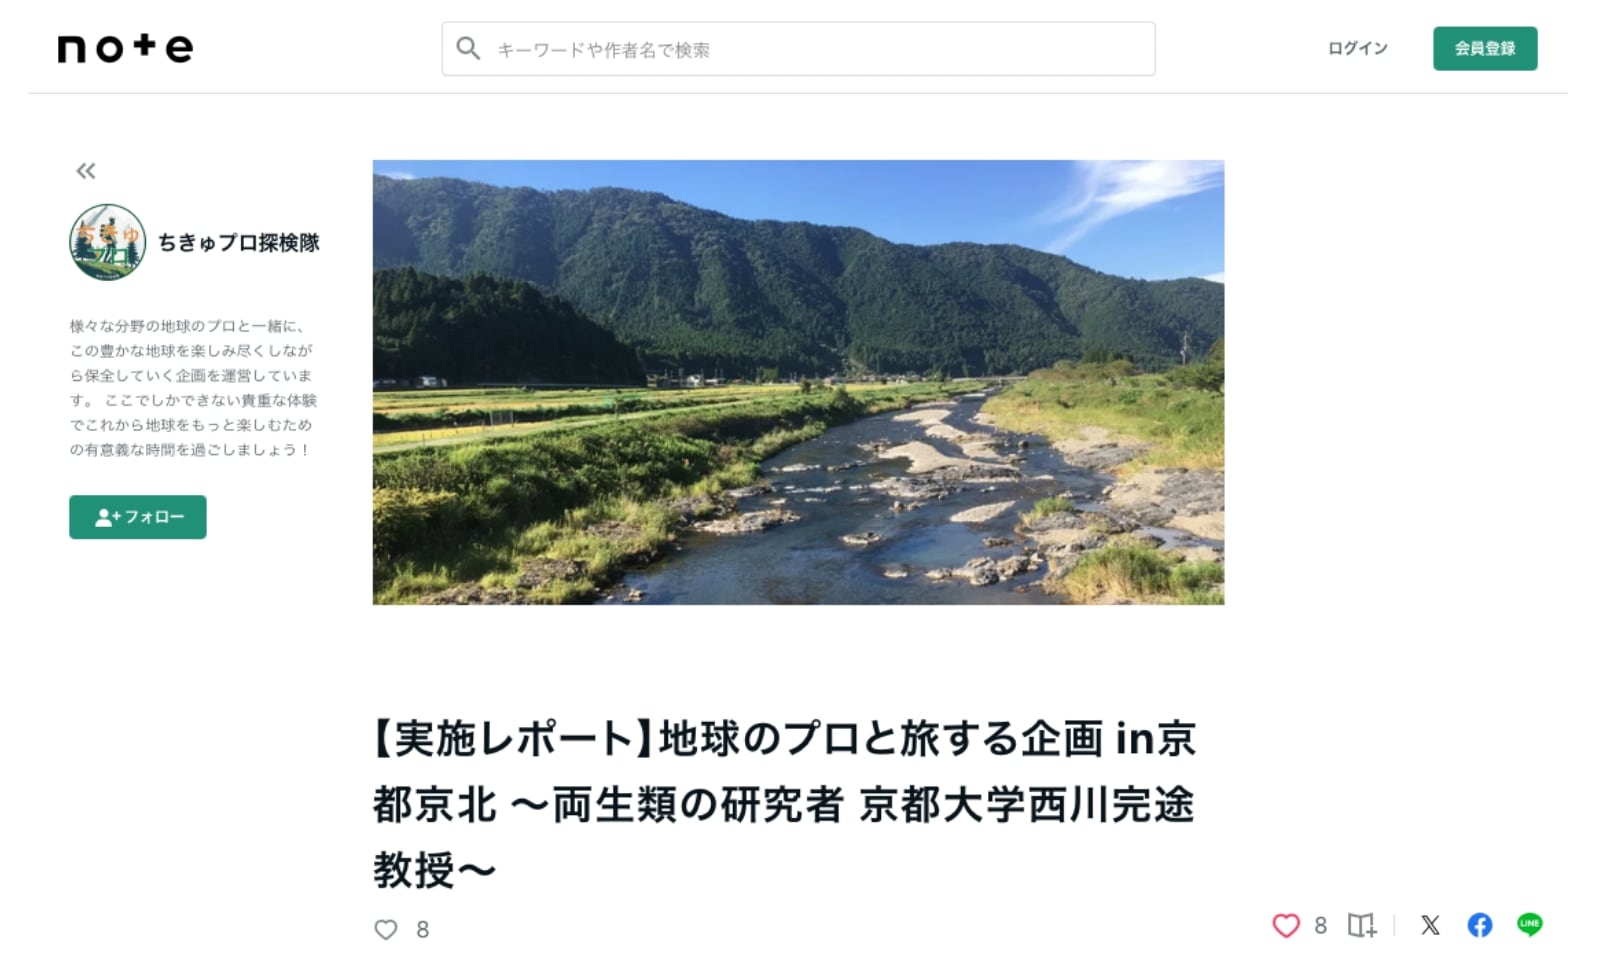 ちきゅプロ探検隊による地球のプロと旅する企画in京都京北に関するnote記事のトップ画面。京北を流れるおだやかな河川をメインビジュアルに、実施レポートのタイトルが書かれています。